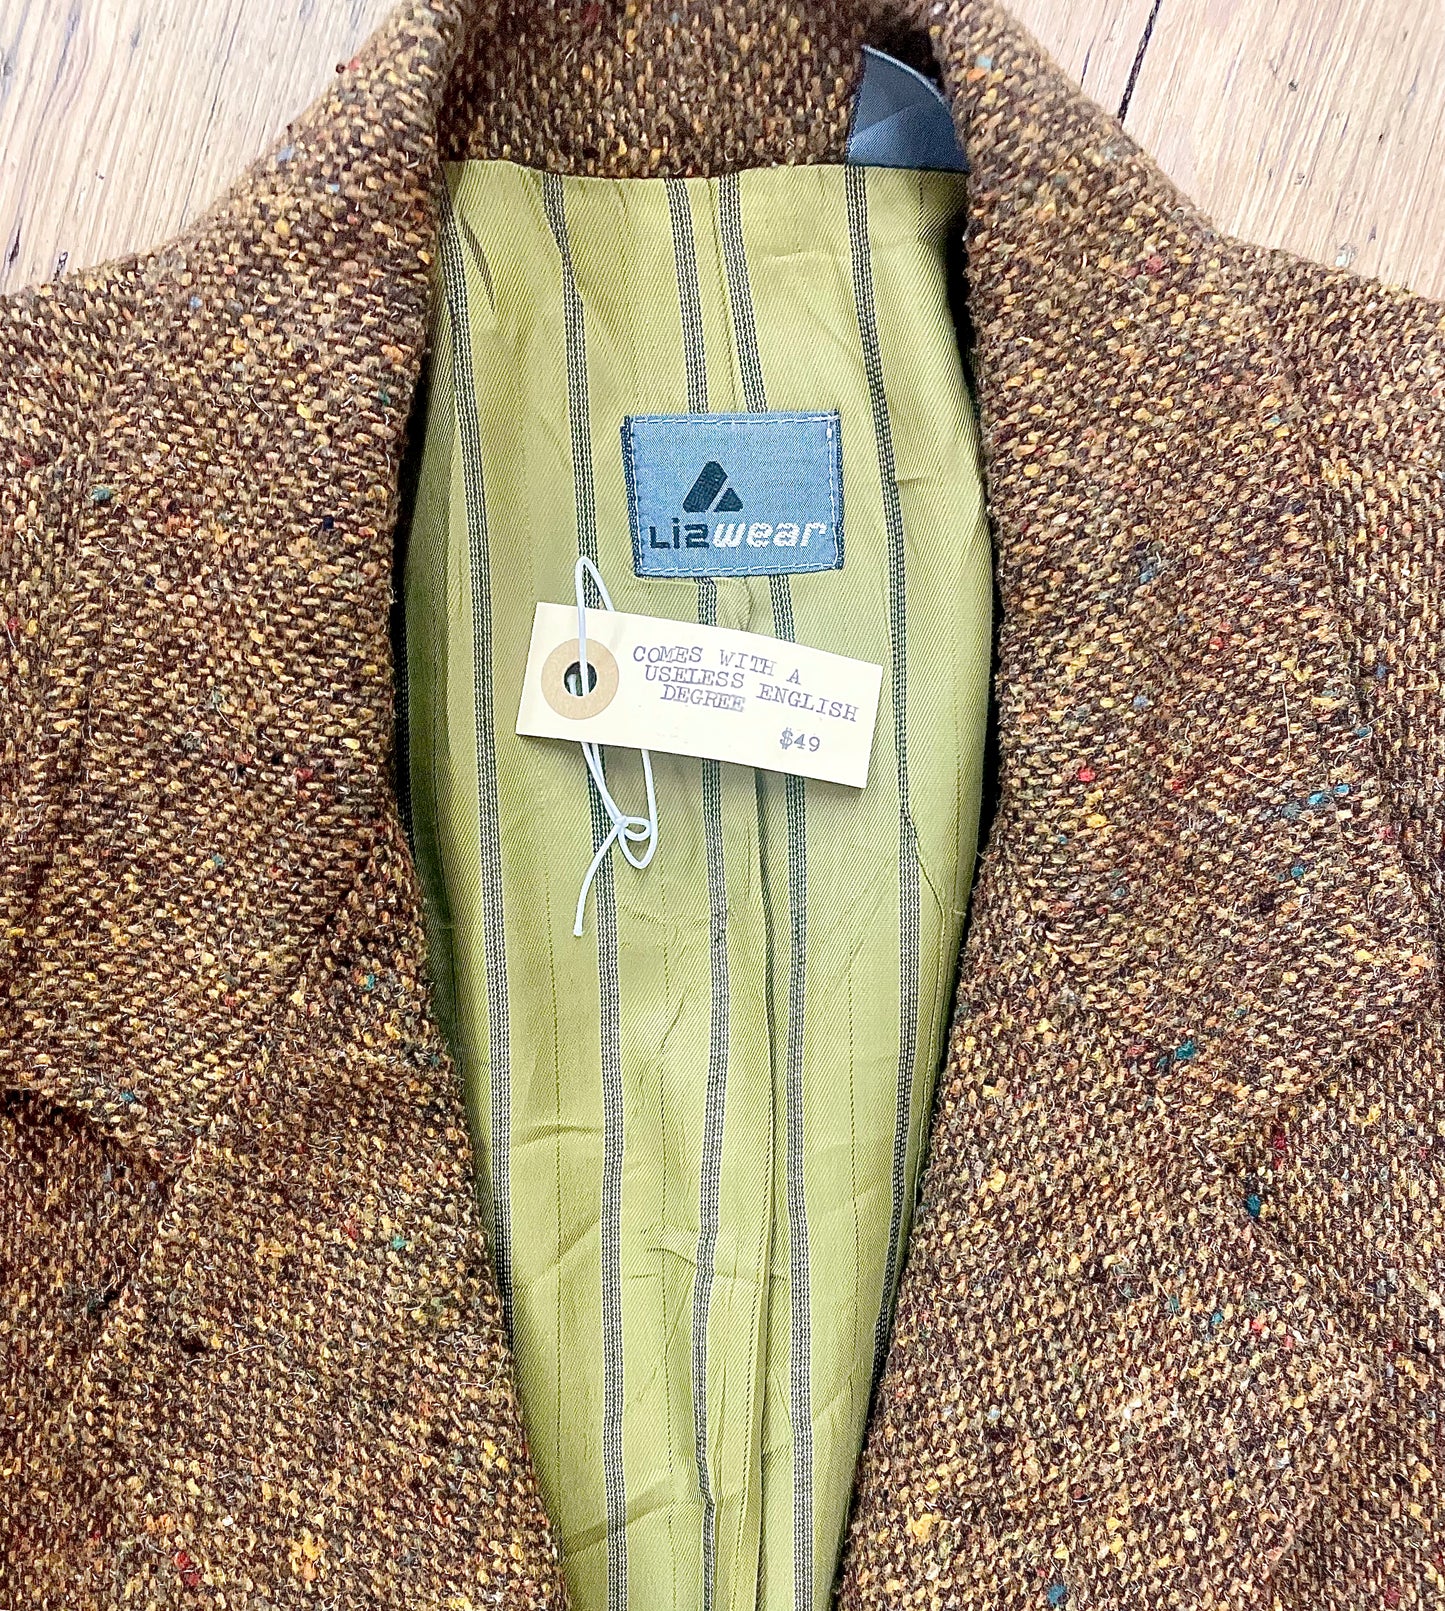 Nineties-Cut Tweed Blazer [vintage, women’s medium]